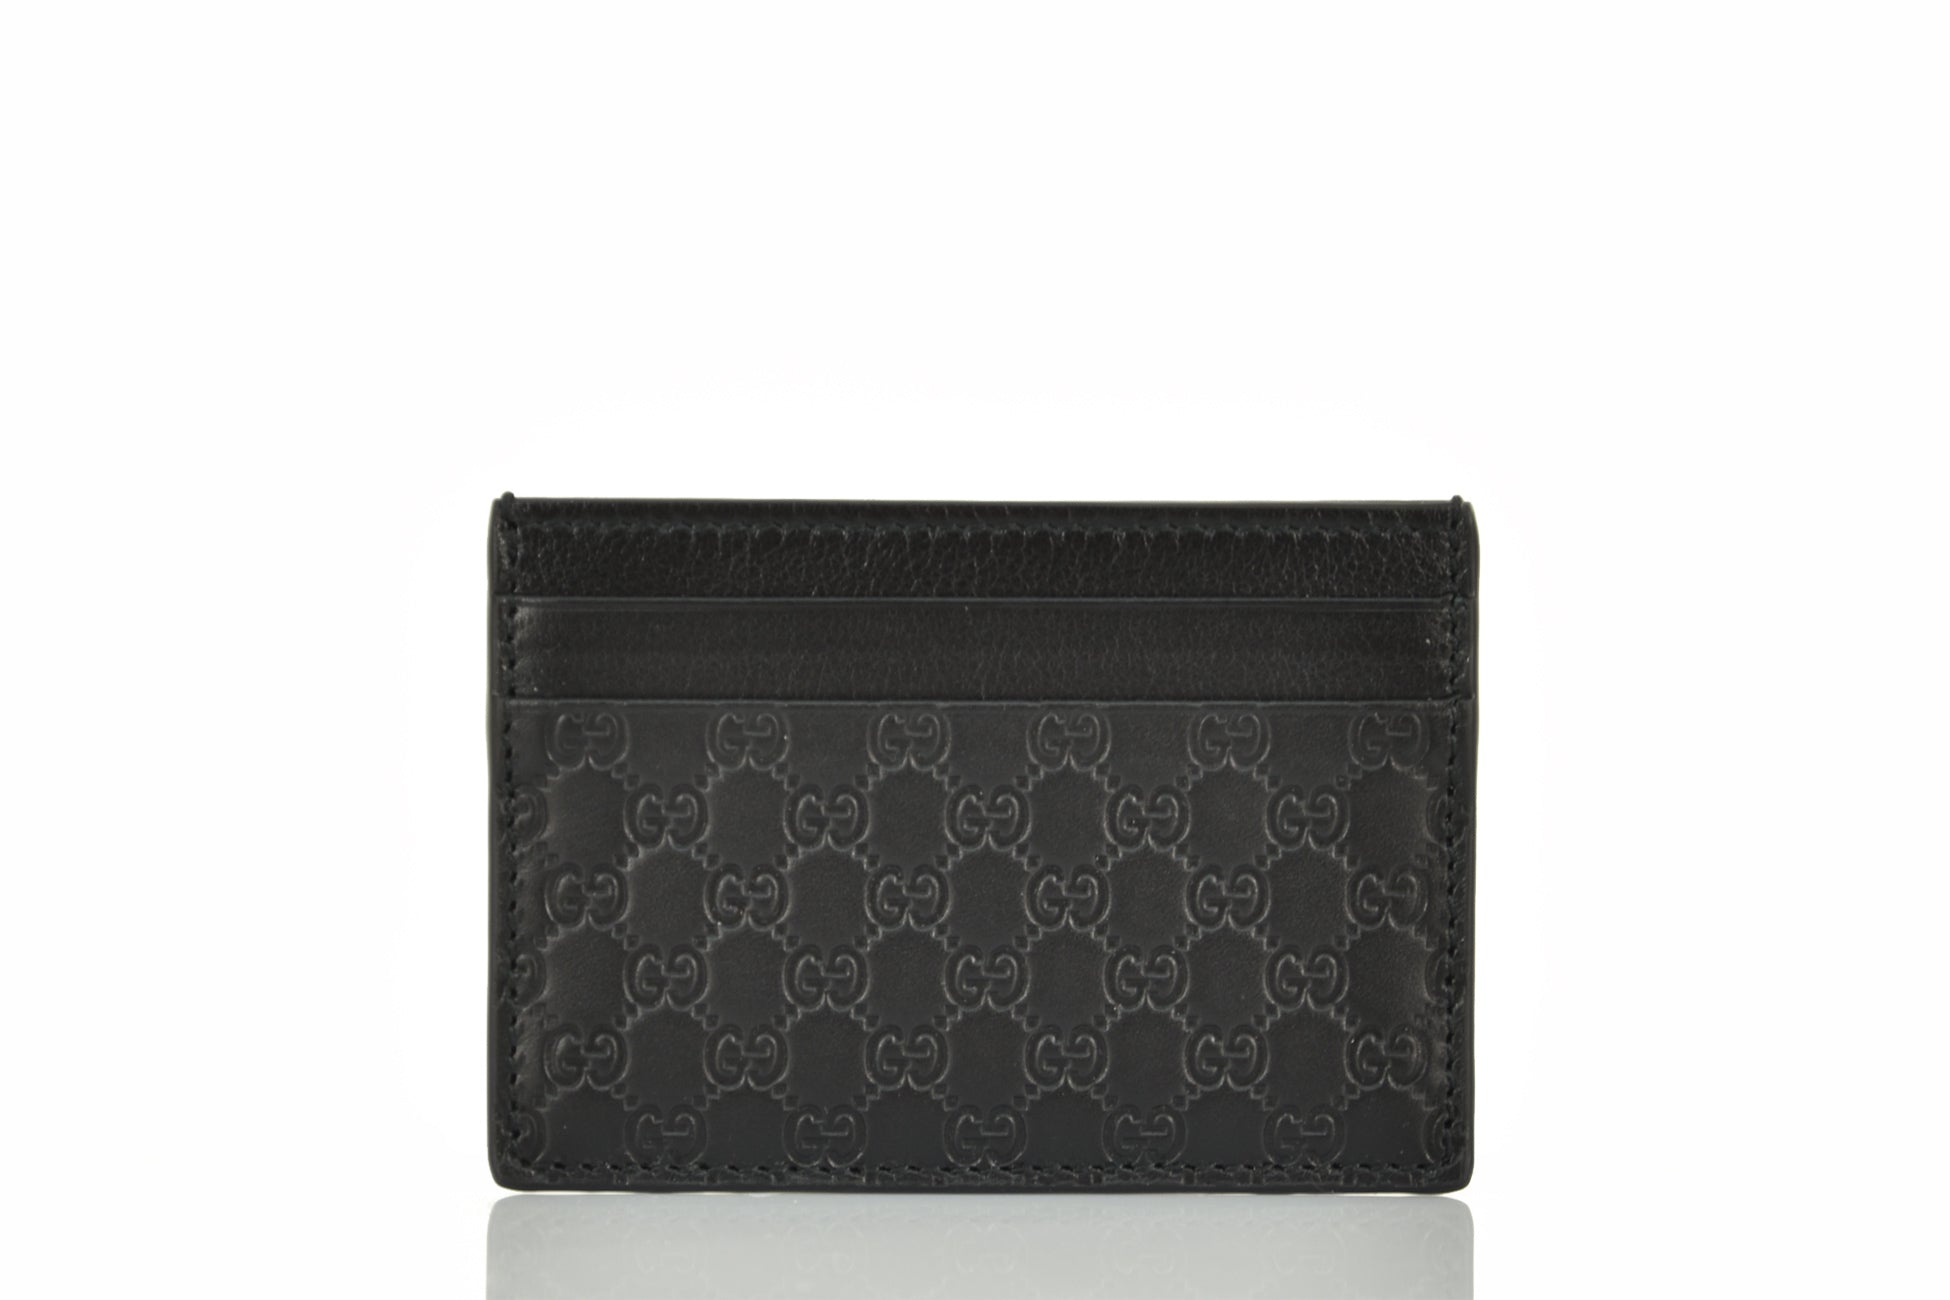 GUCCI Microguccissima Monogram Leather Card Case Black 262837